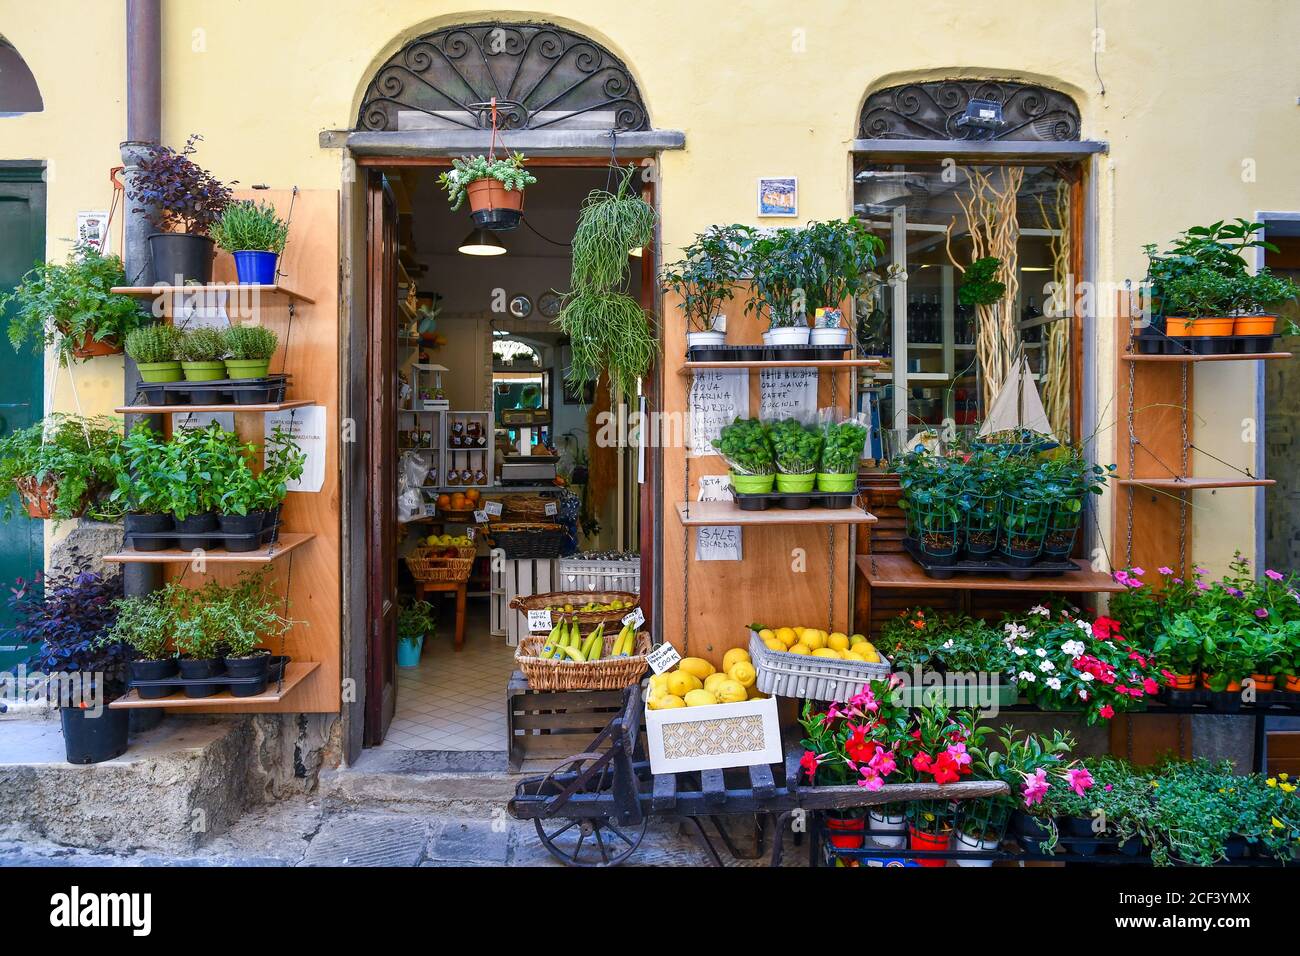 Un piccolo negozio di alimentari con piante fiorite, erbe e frutta esposti sul marciapiede nel vecchio villaggio di pescatori, Porto Venere, la Spezia, Italia Foto Stock